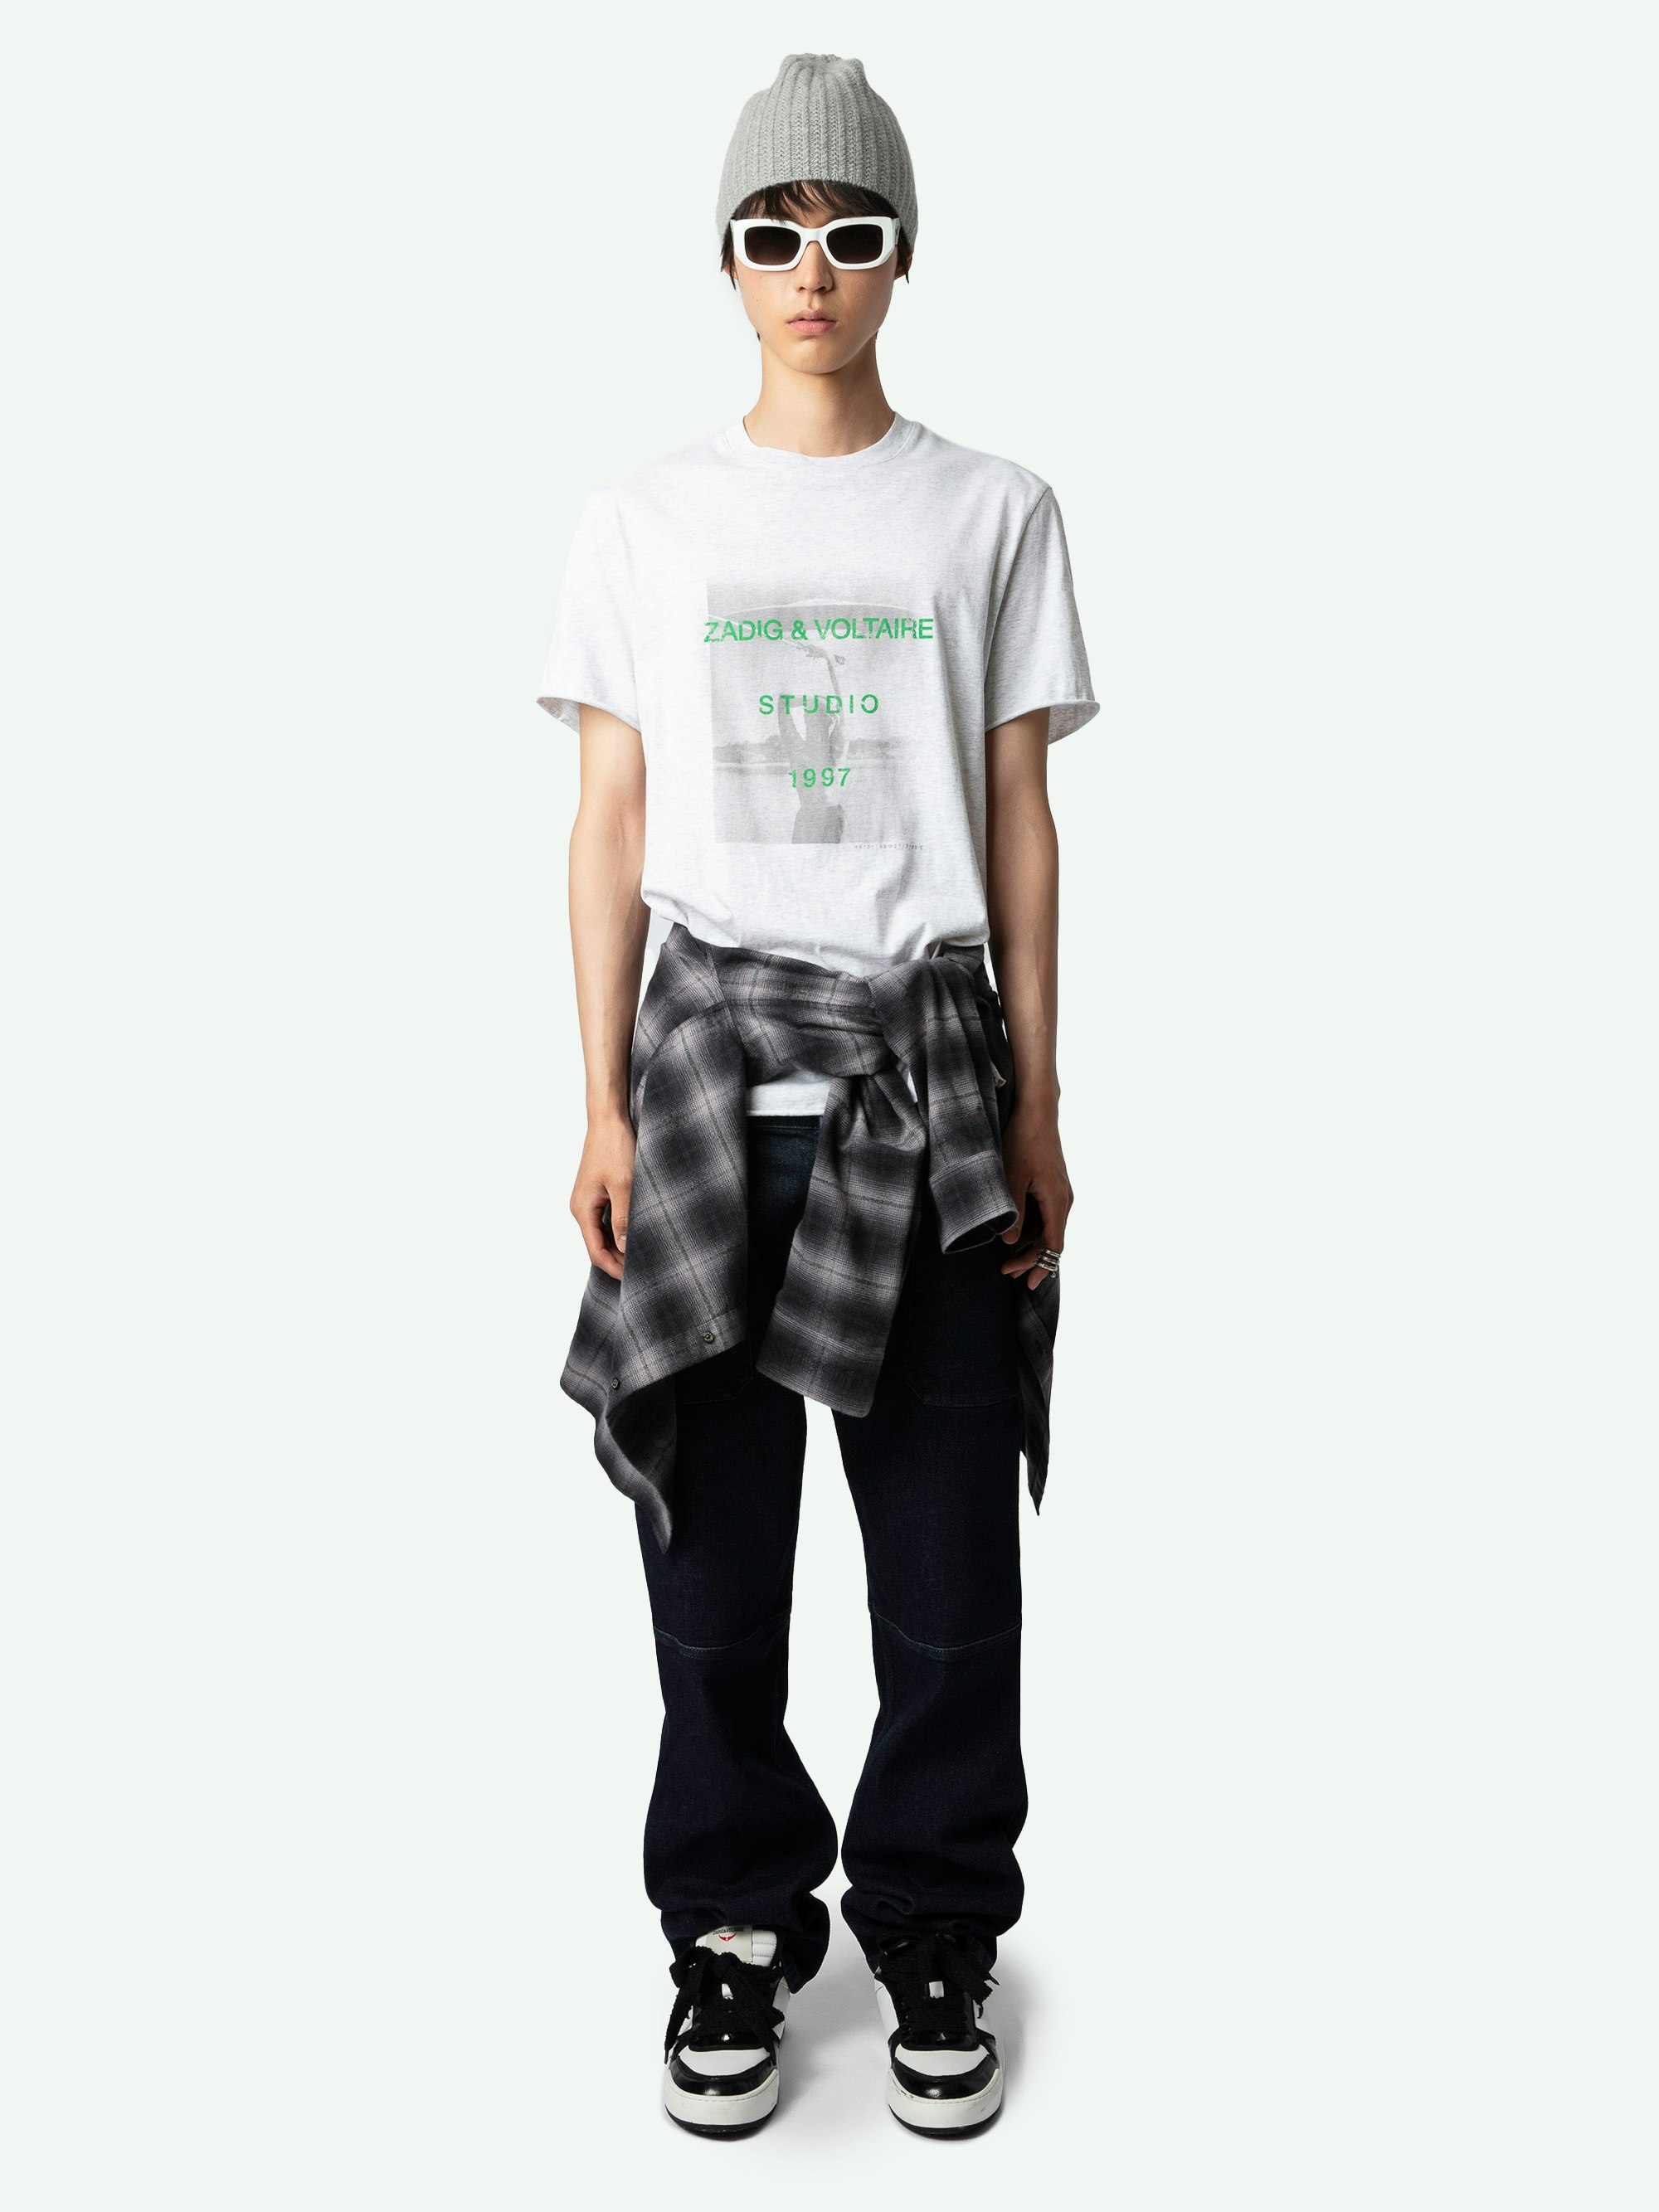 Camiseta Ted con Estampado Fotográfico - Camiseta de manga corta de algodón ecológico de color gris claro, con estampado fotográfico Studio Woman en la parte delantera.